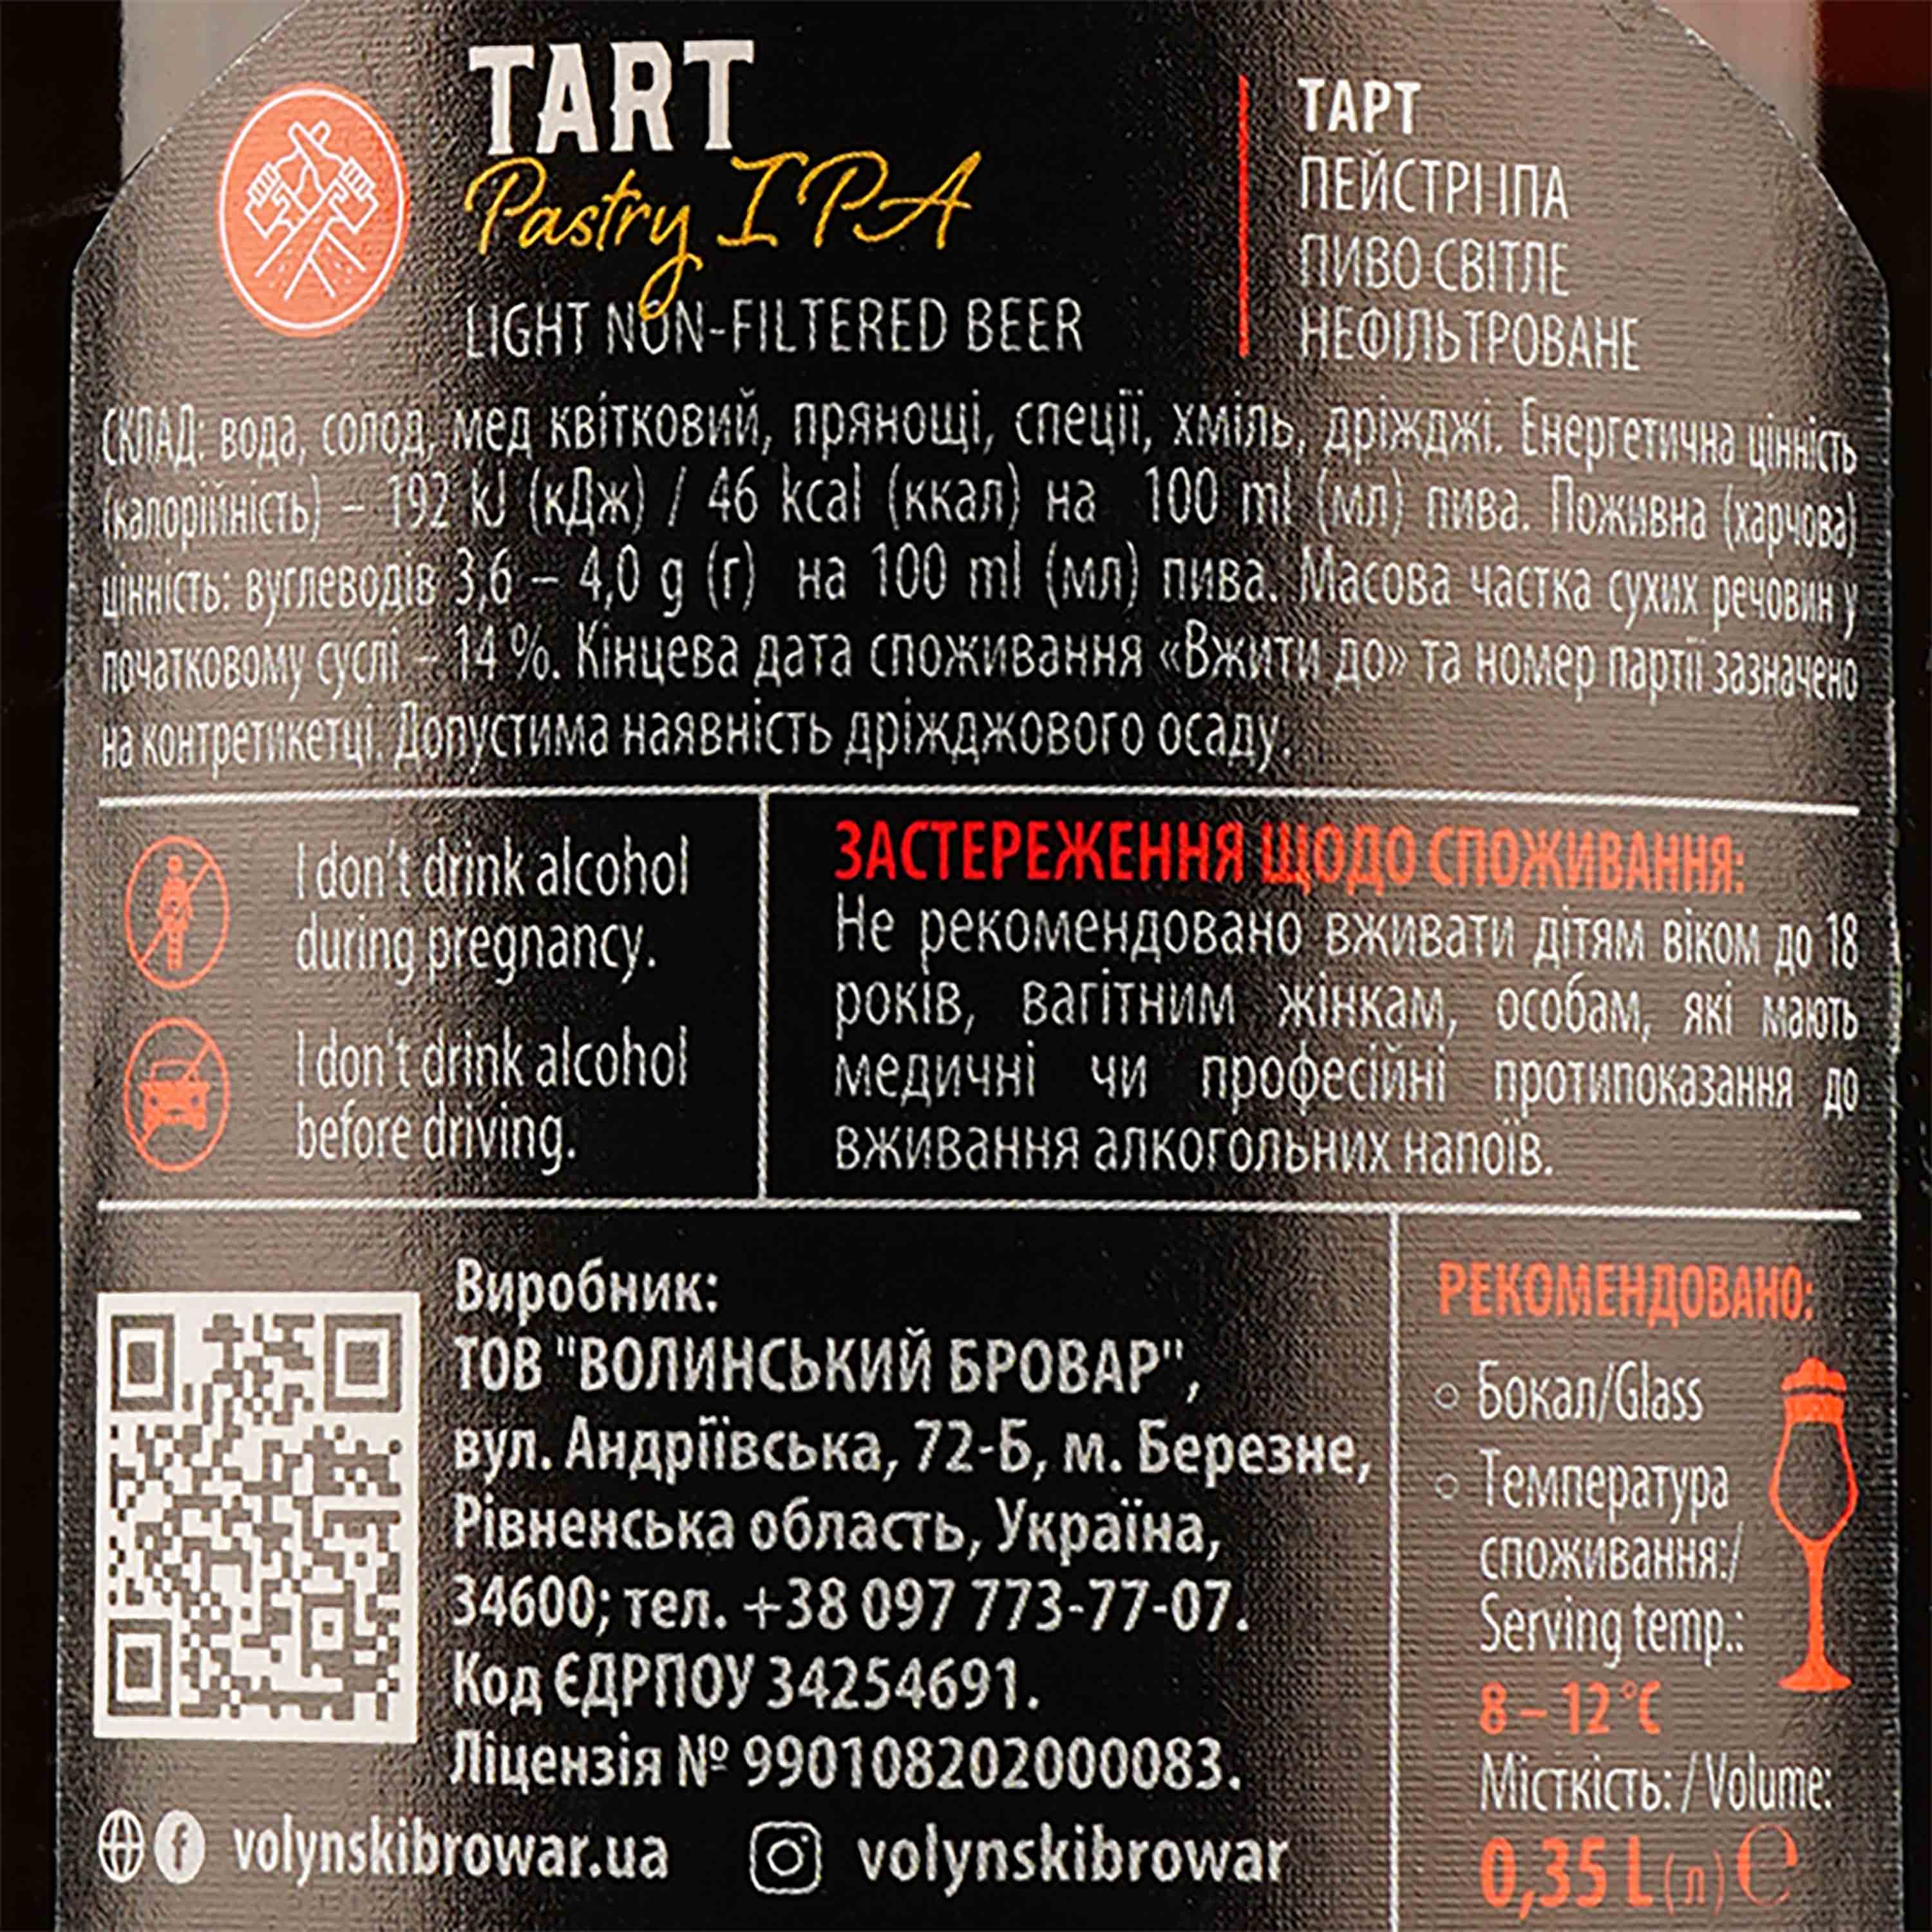 Пиво Volynski Browar Tart Pasty IPA, светлое, нефильтрованное, 5%, 0,35 л - фото 3